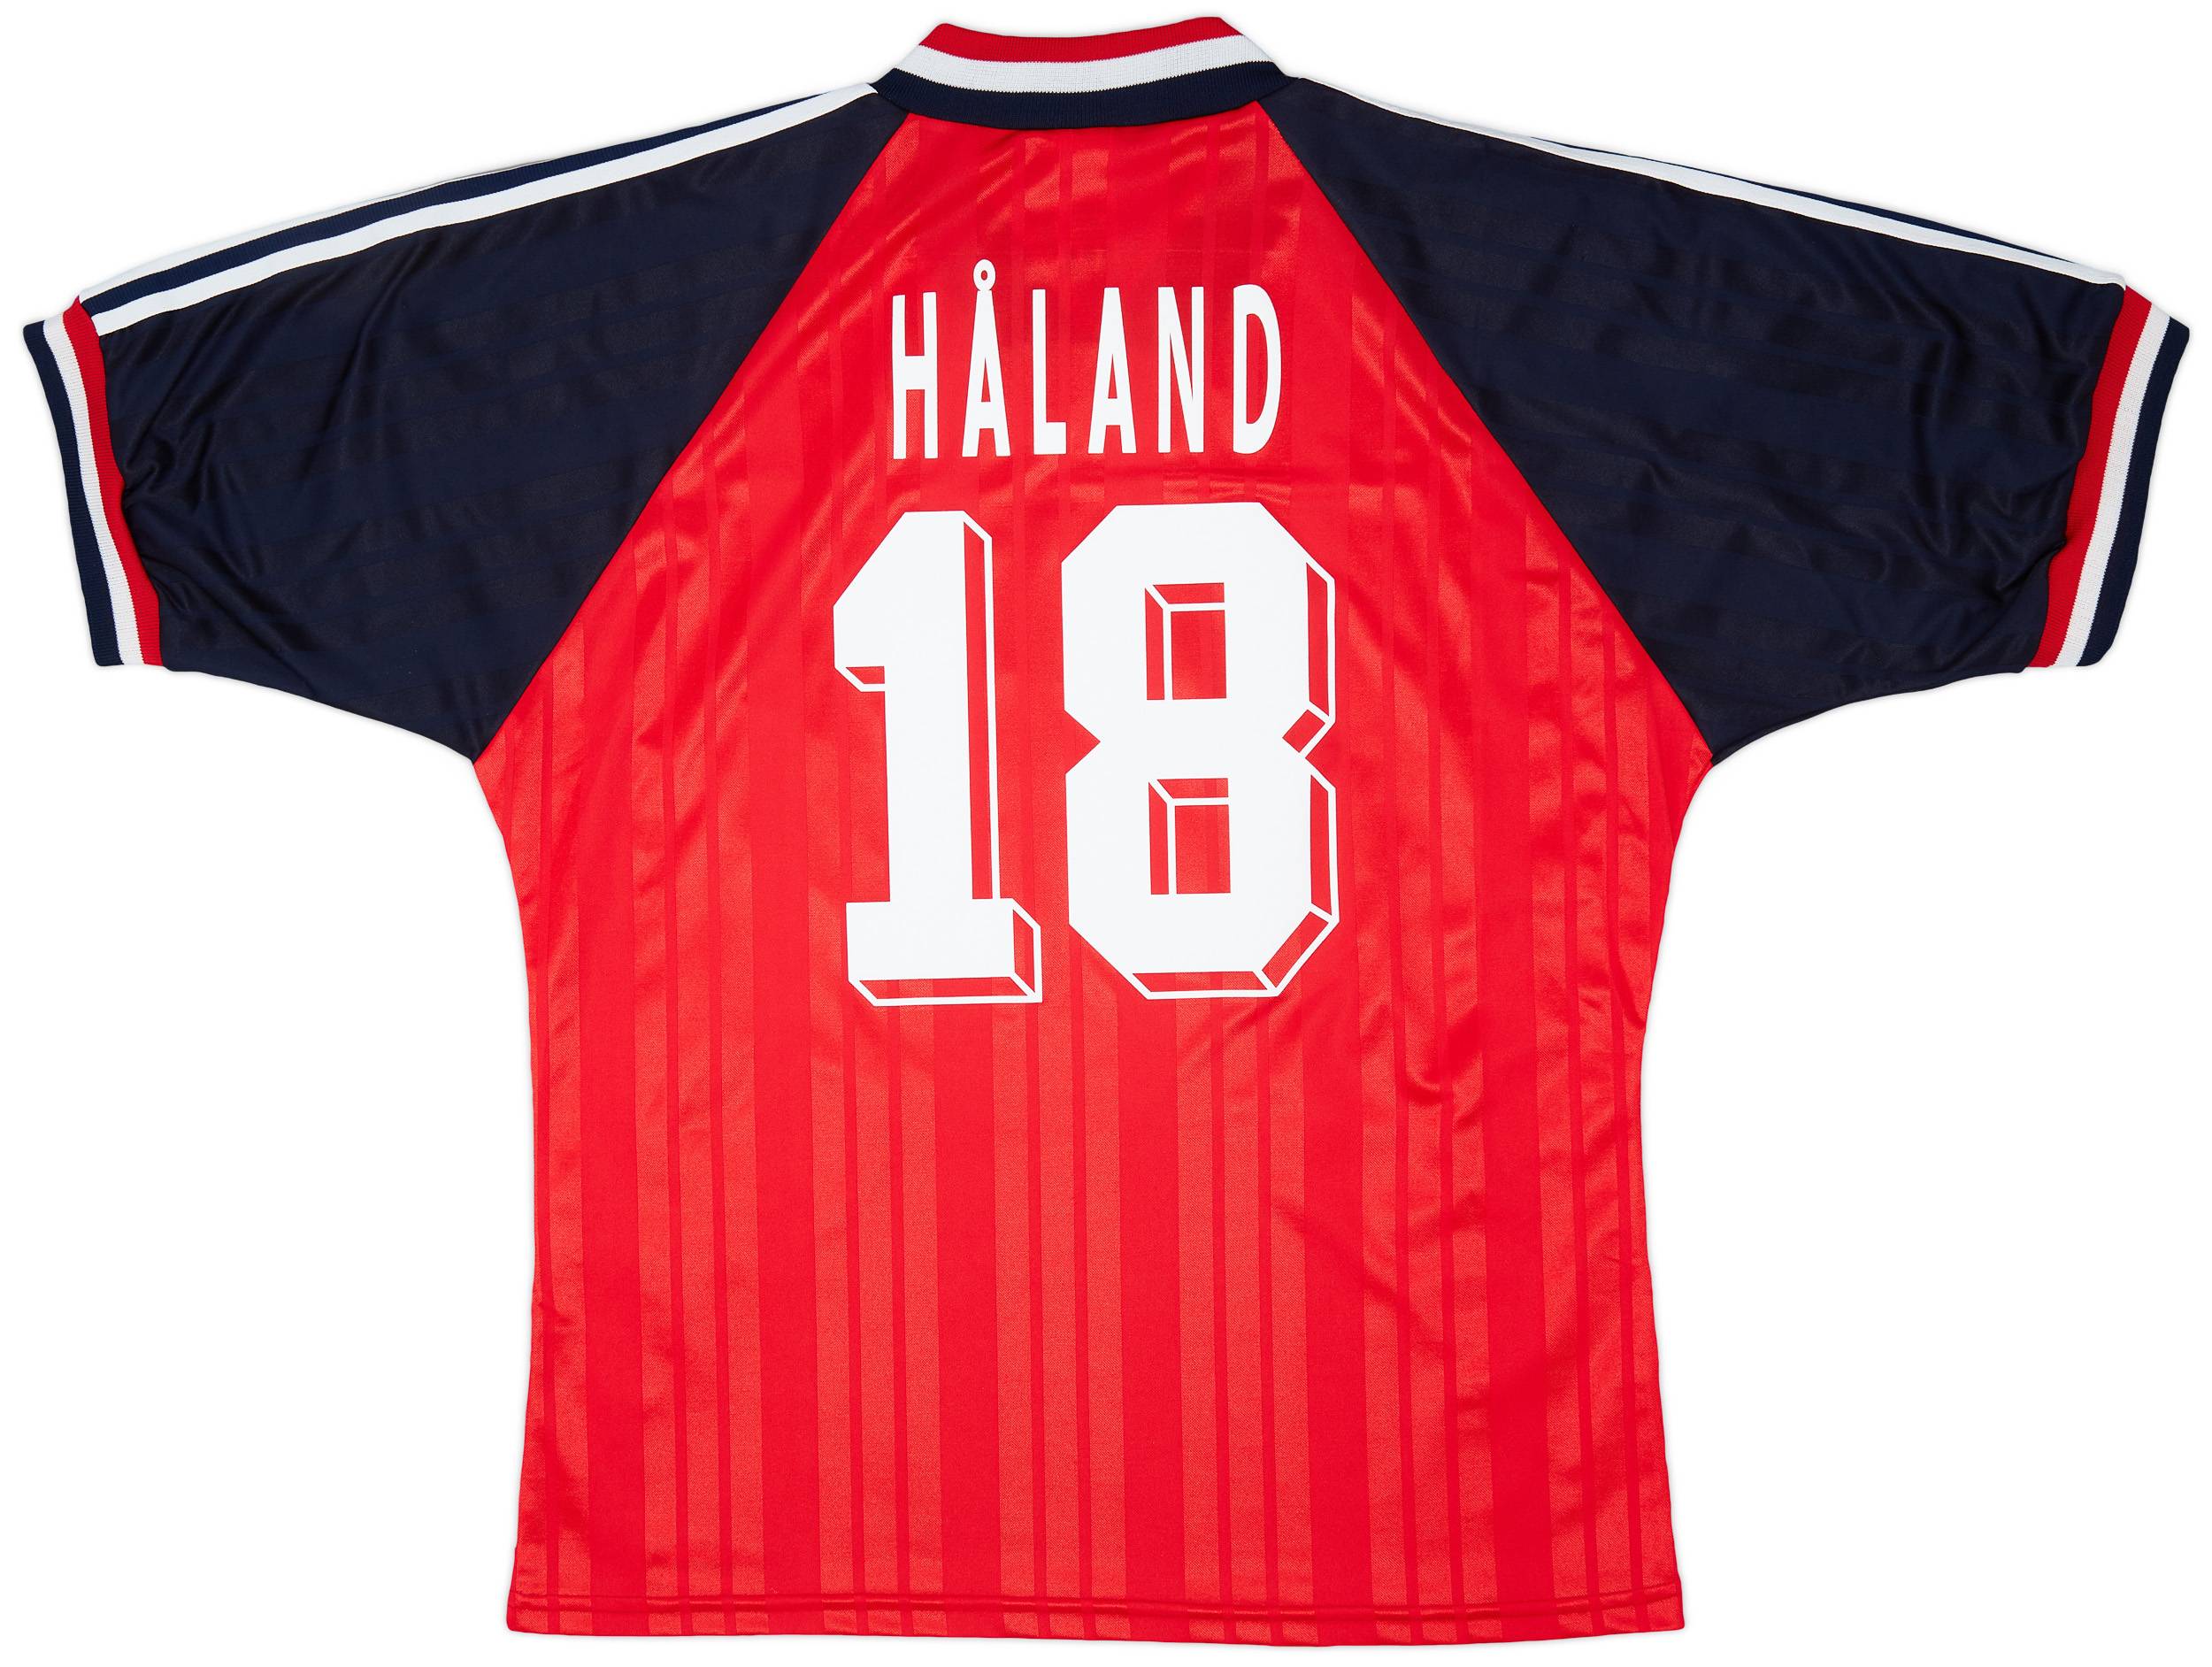 1994-96 Norway Home Shirt Håland #18 - 9/10 - (L)